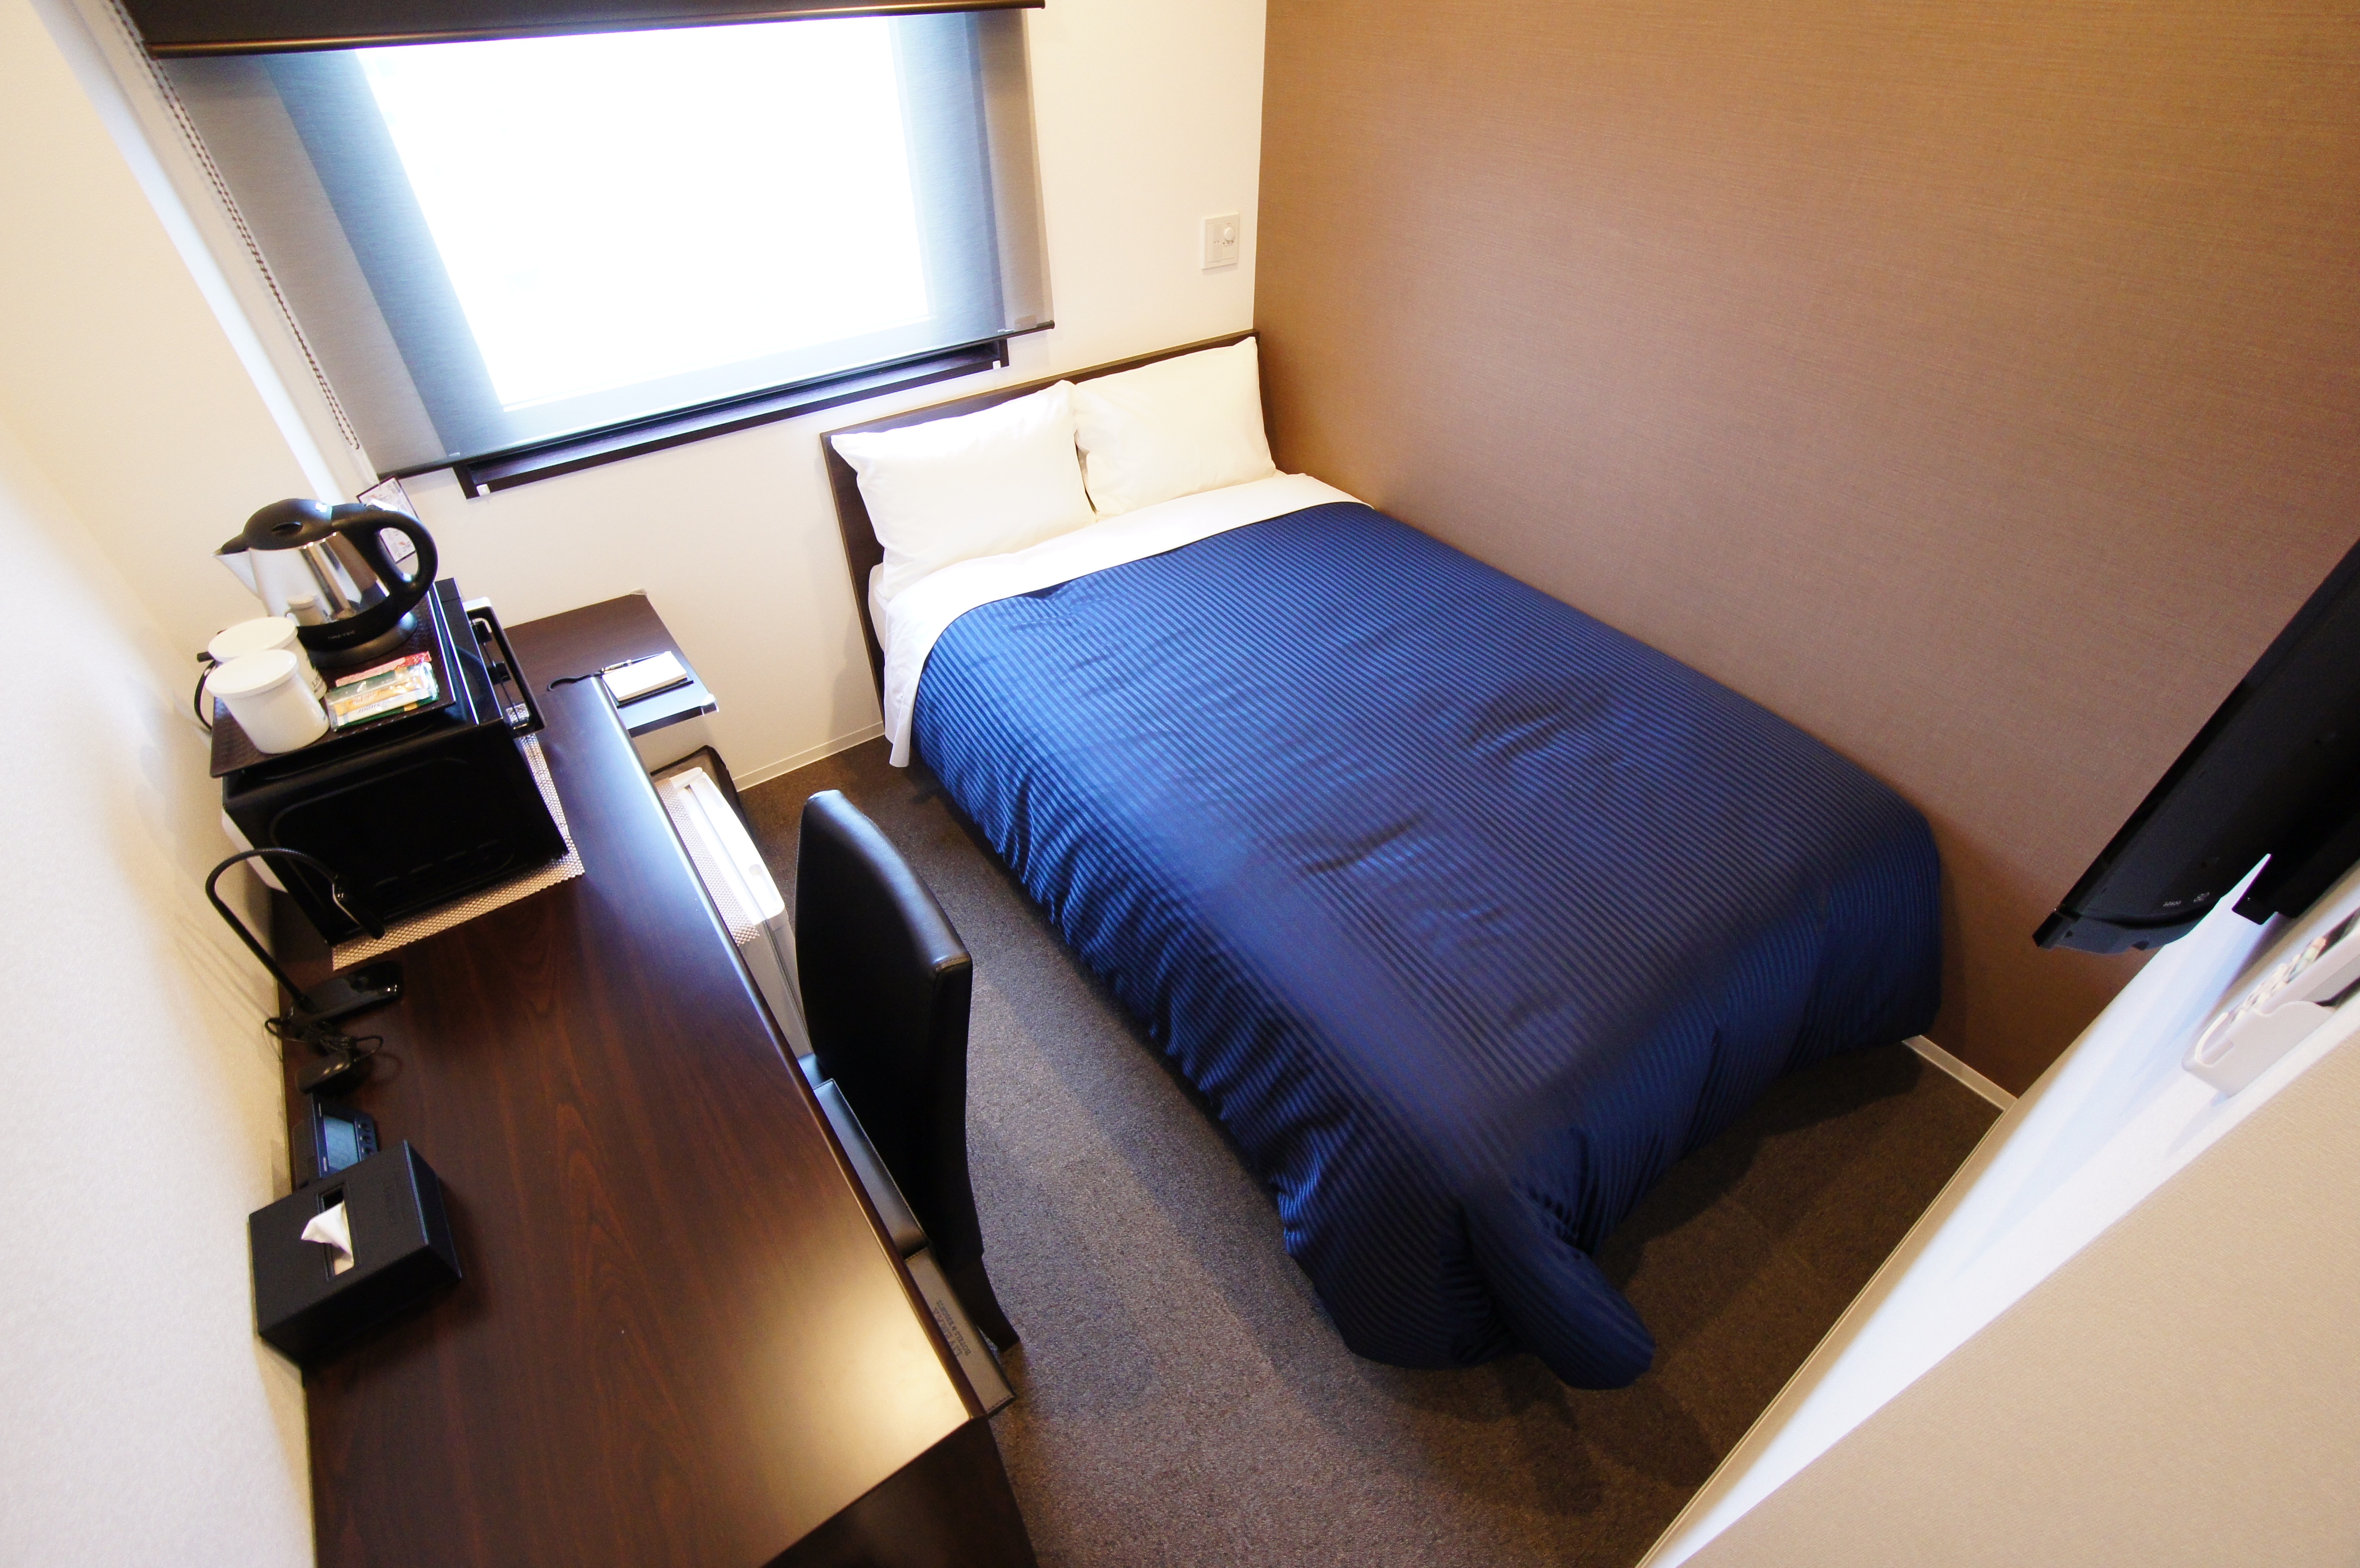 [Single room] Tempat tidur semi-double Simmons diadopsi.